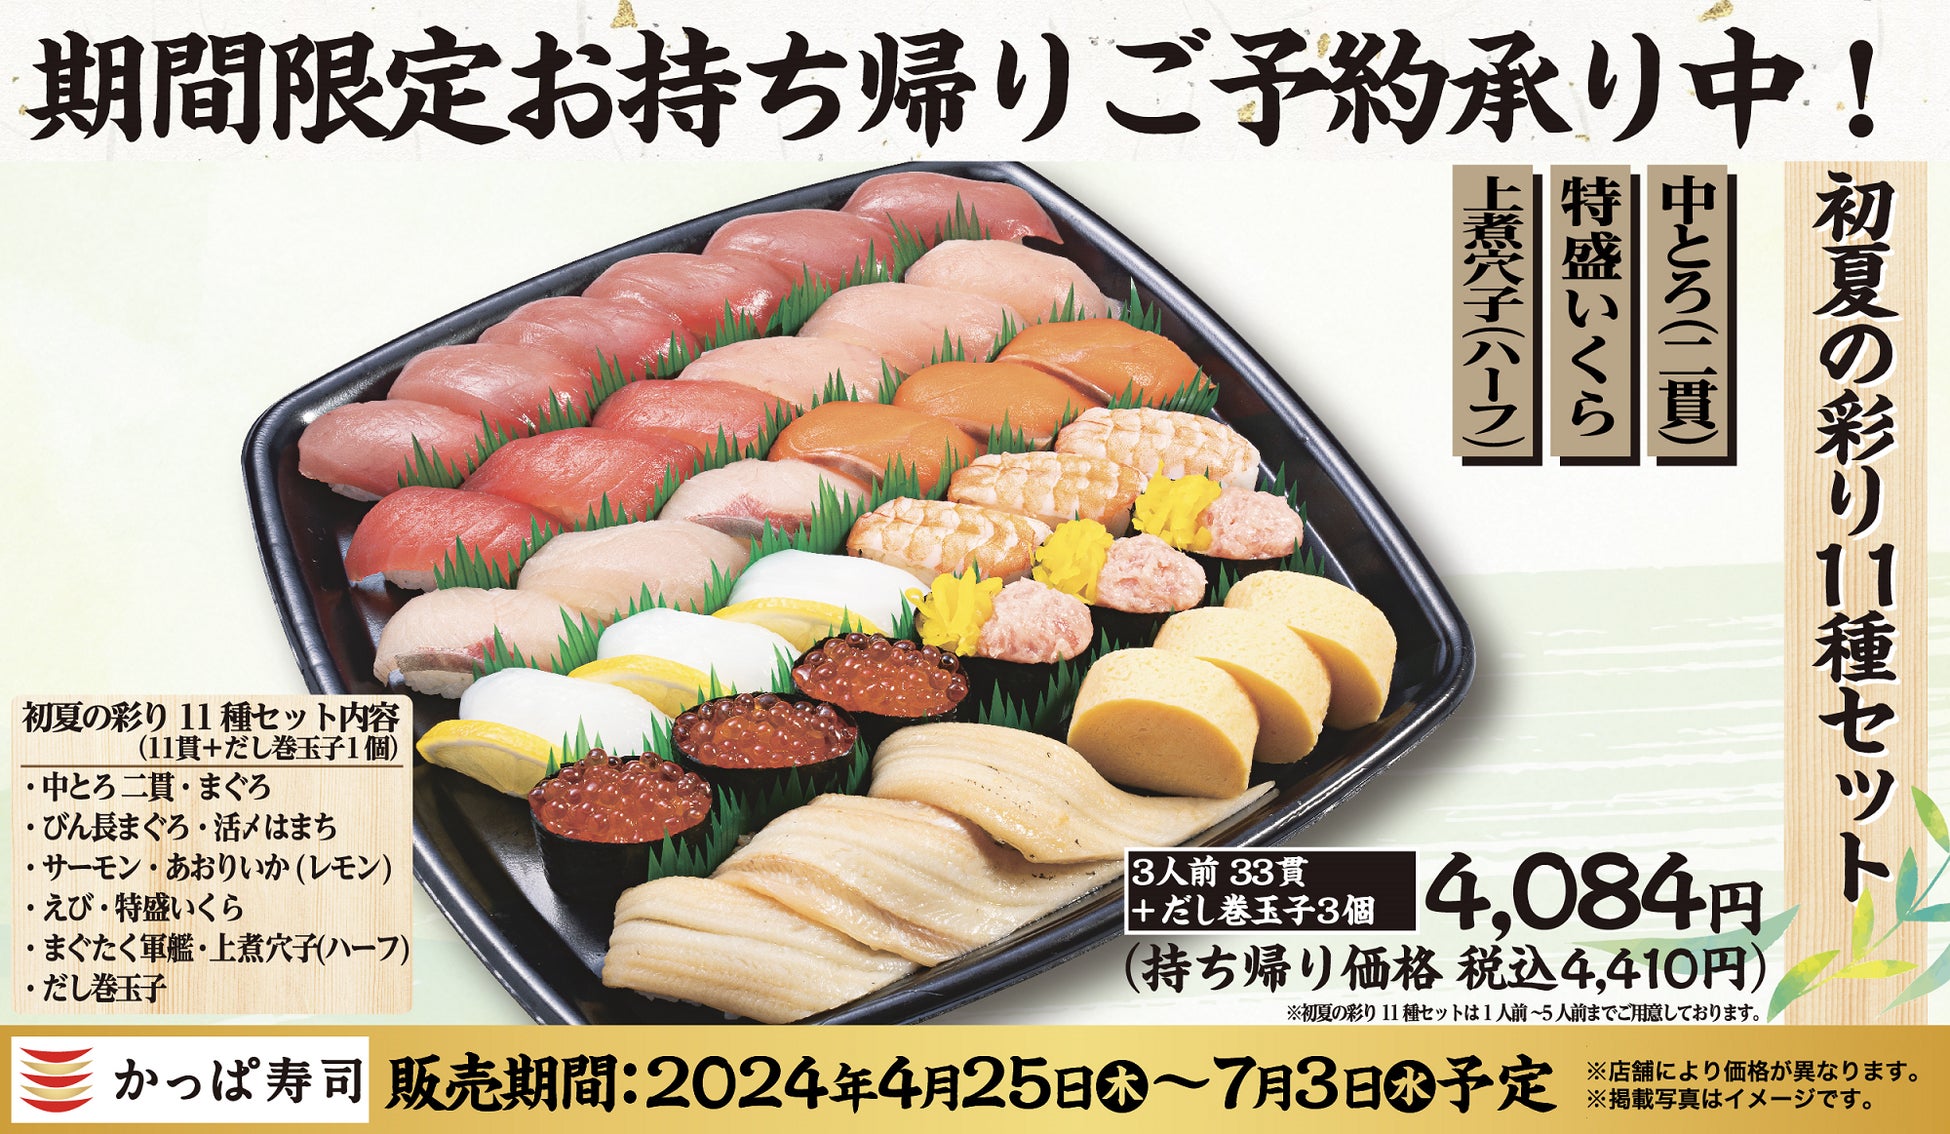 出会えたらラッキー！7色から選べる“ユニコーン” 型ソフトクリーム「つの恋」がSHIBUYA109渋谷店に登場！